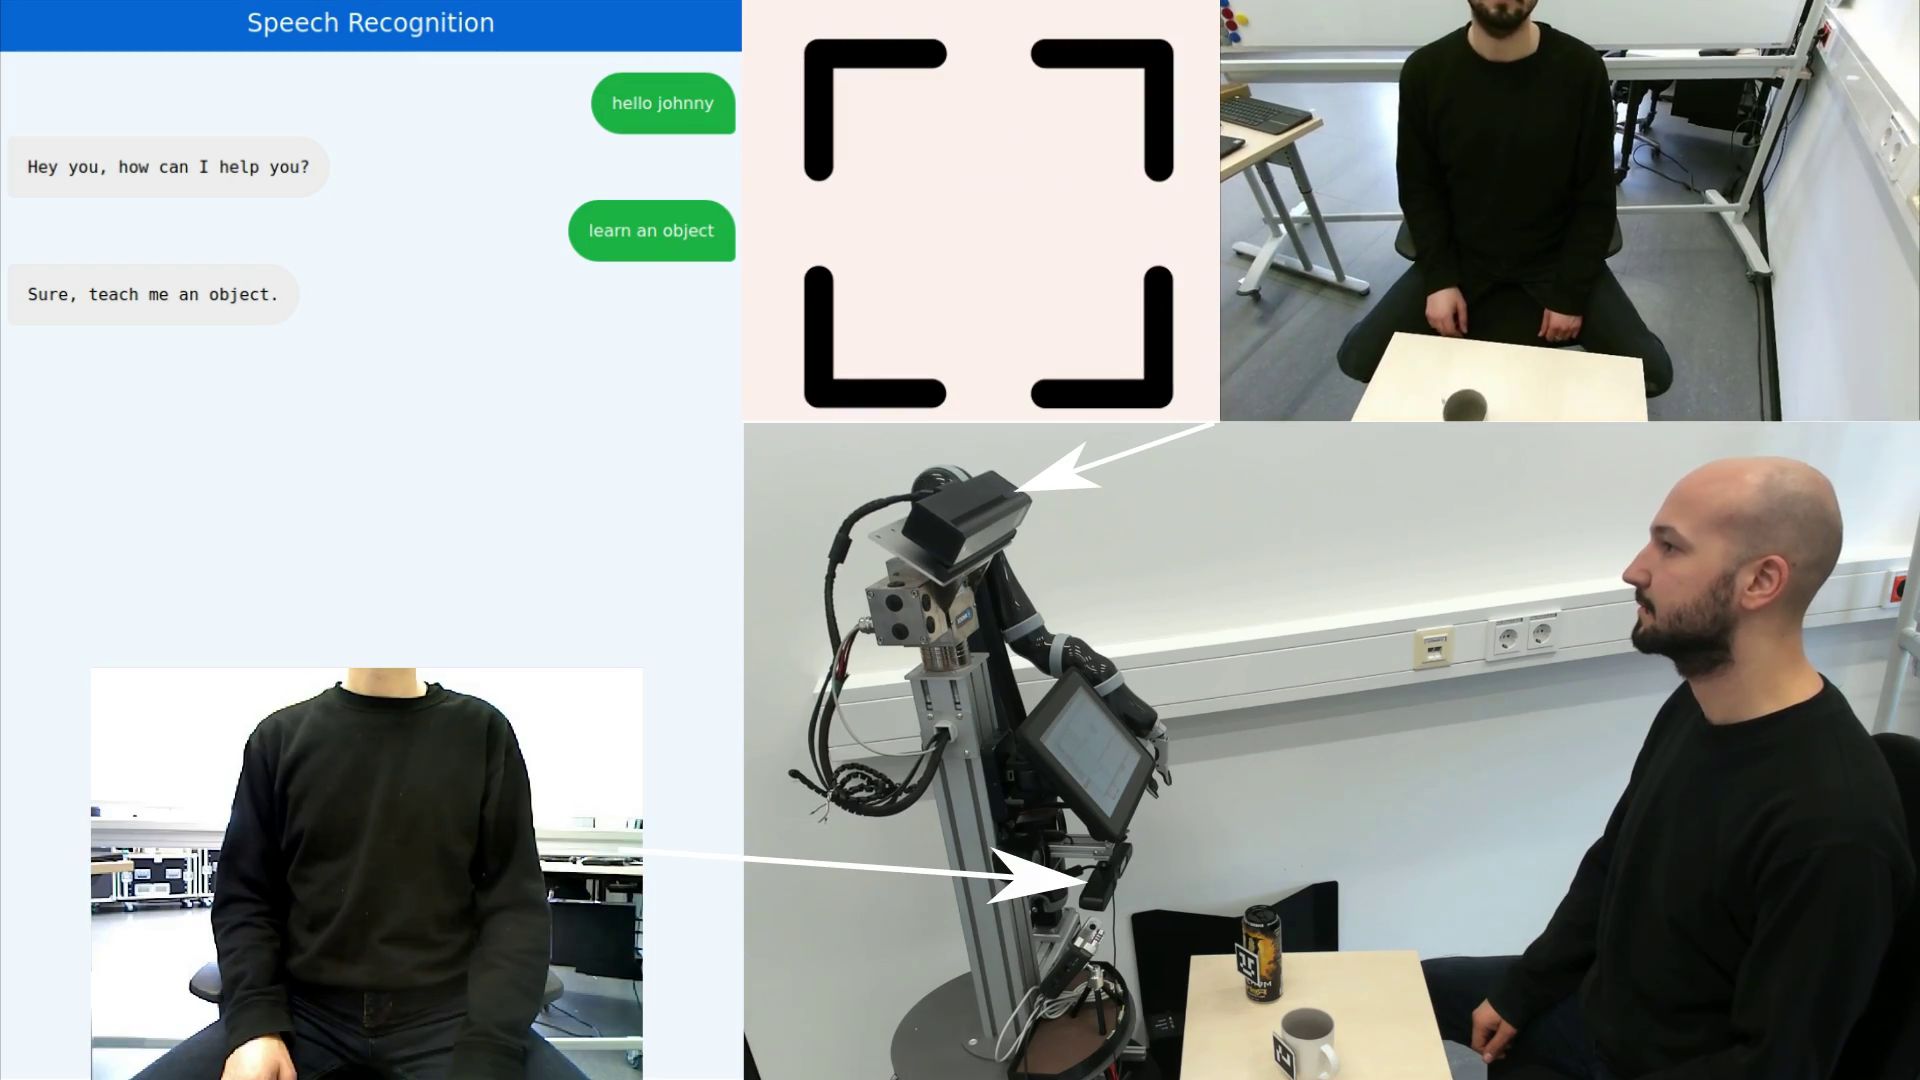 Mensch interagiert mit Roboter